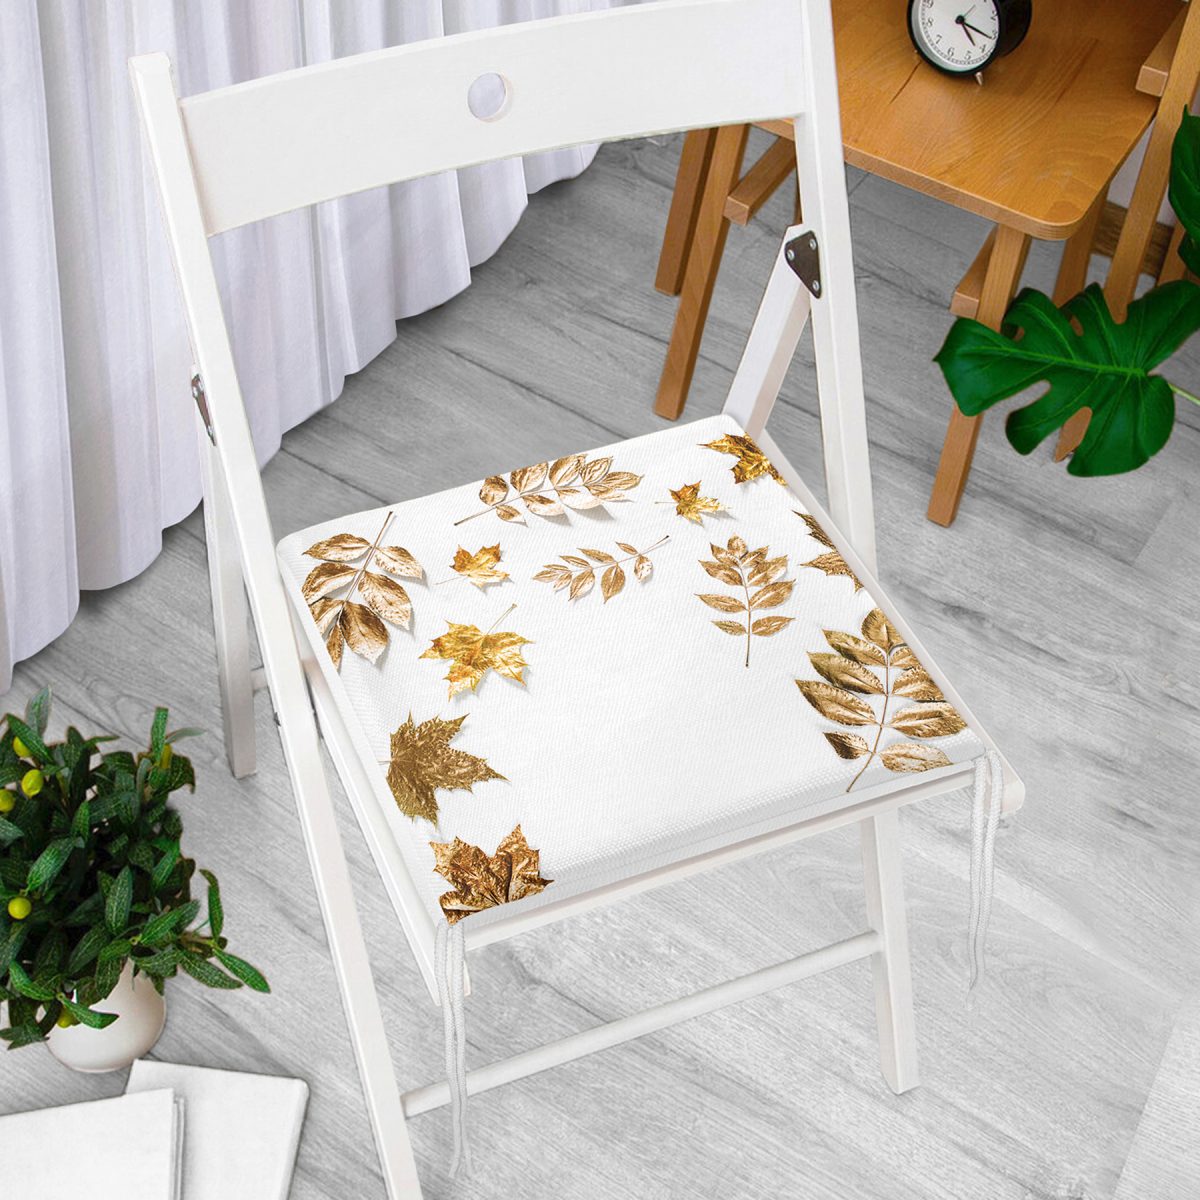 3D Altın Renkli Yapraklar Desenli Dekoratif Fermuarlı Sandalye Minderi Realhomes